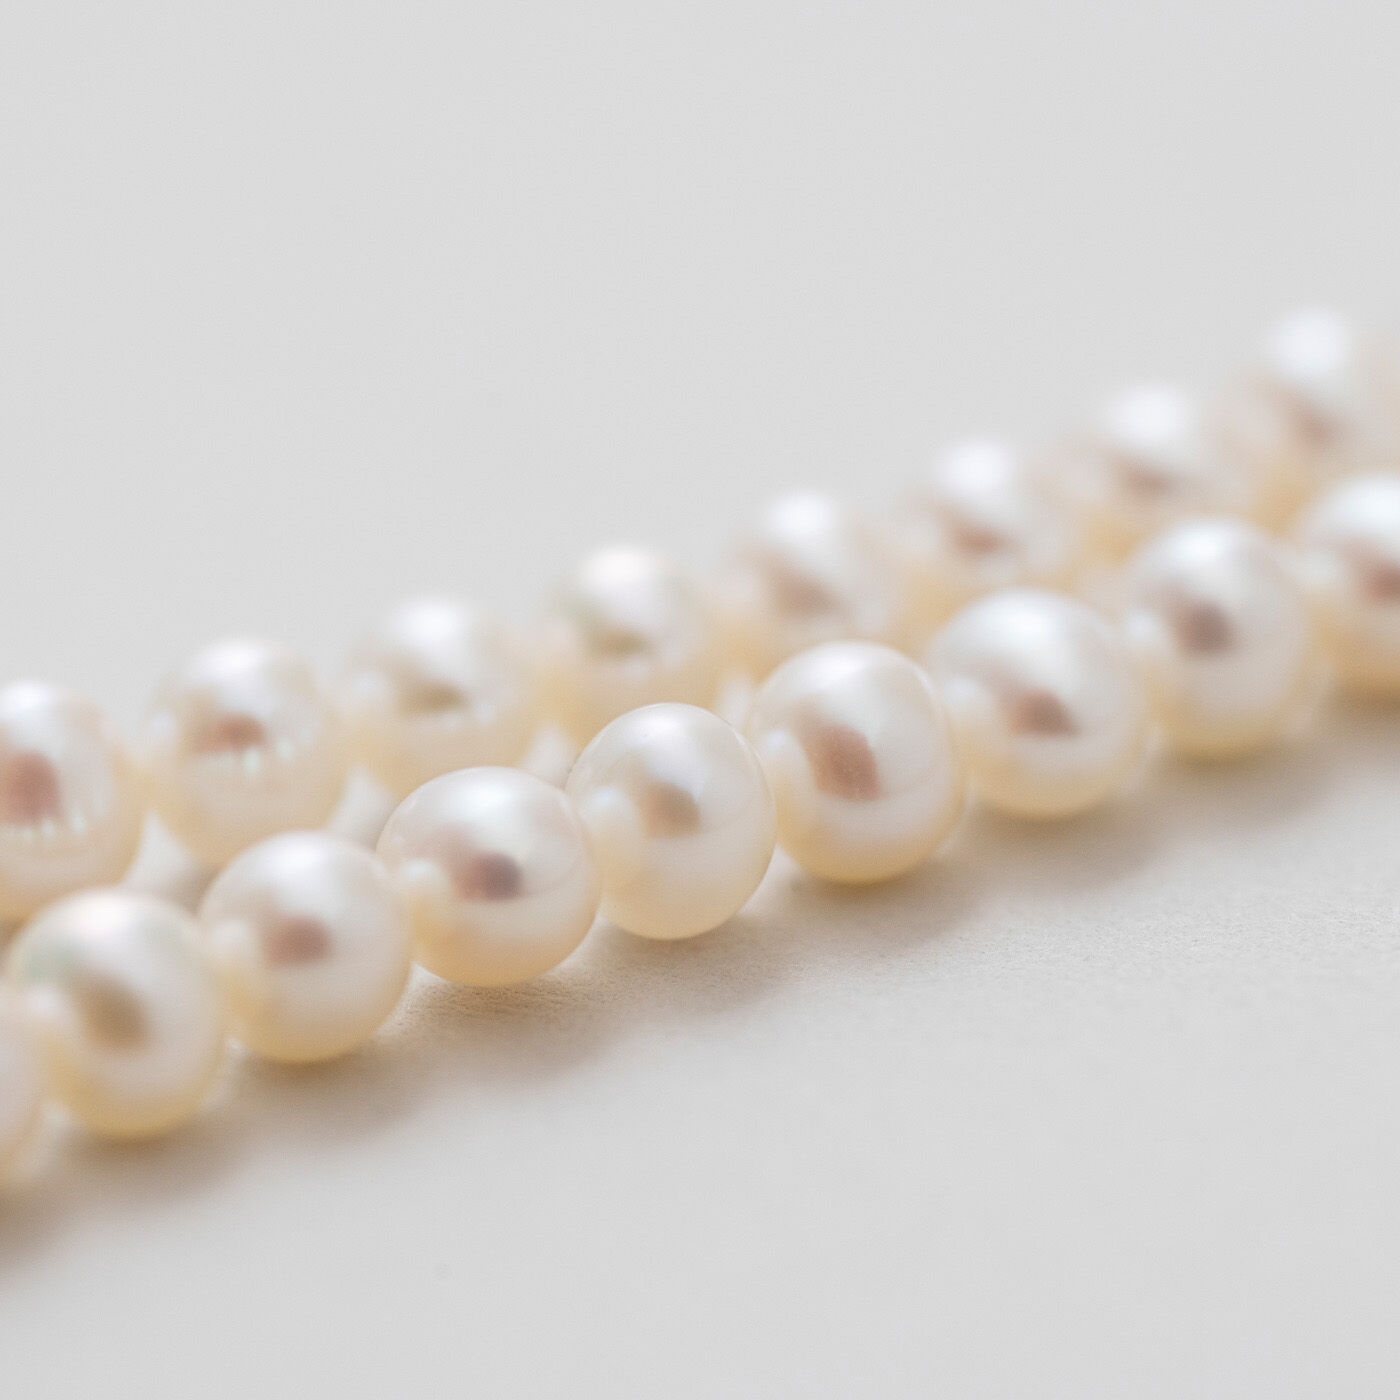 ＆Stories|神戸の老舗真珠メーカーが手掛けた 淡水パールのネックレス〈シルバー925〉|この少し不ぞろいな形のおかげでフォーマルになりすぎず、カジュアルな着こなしにも似合います。